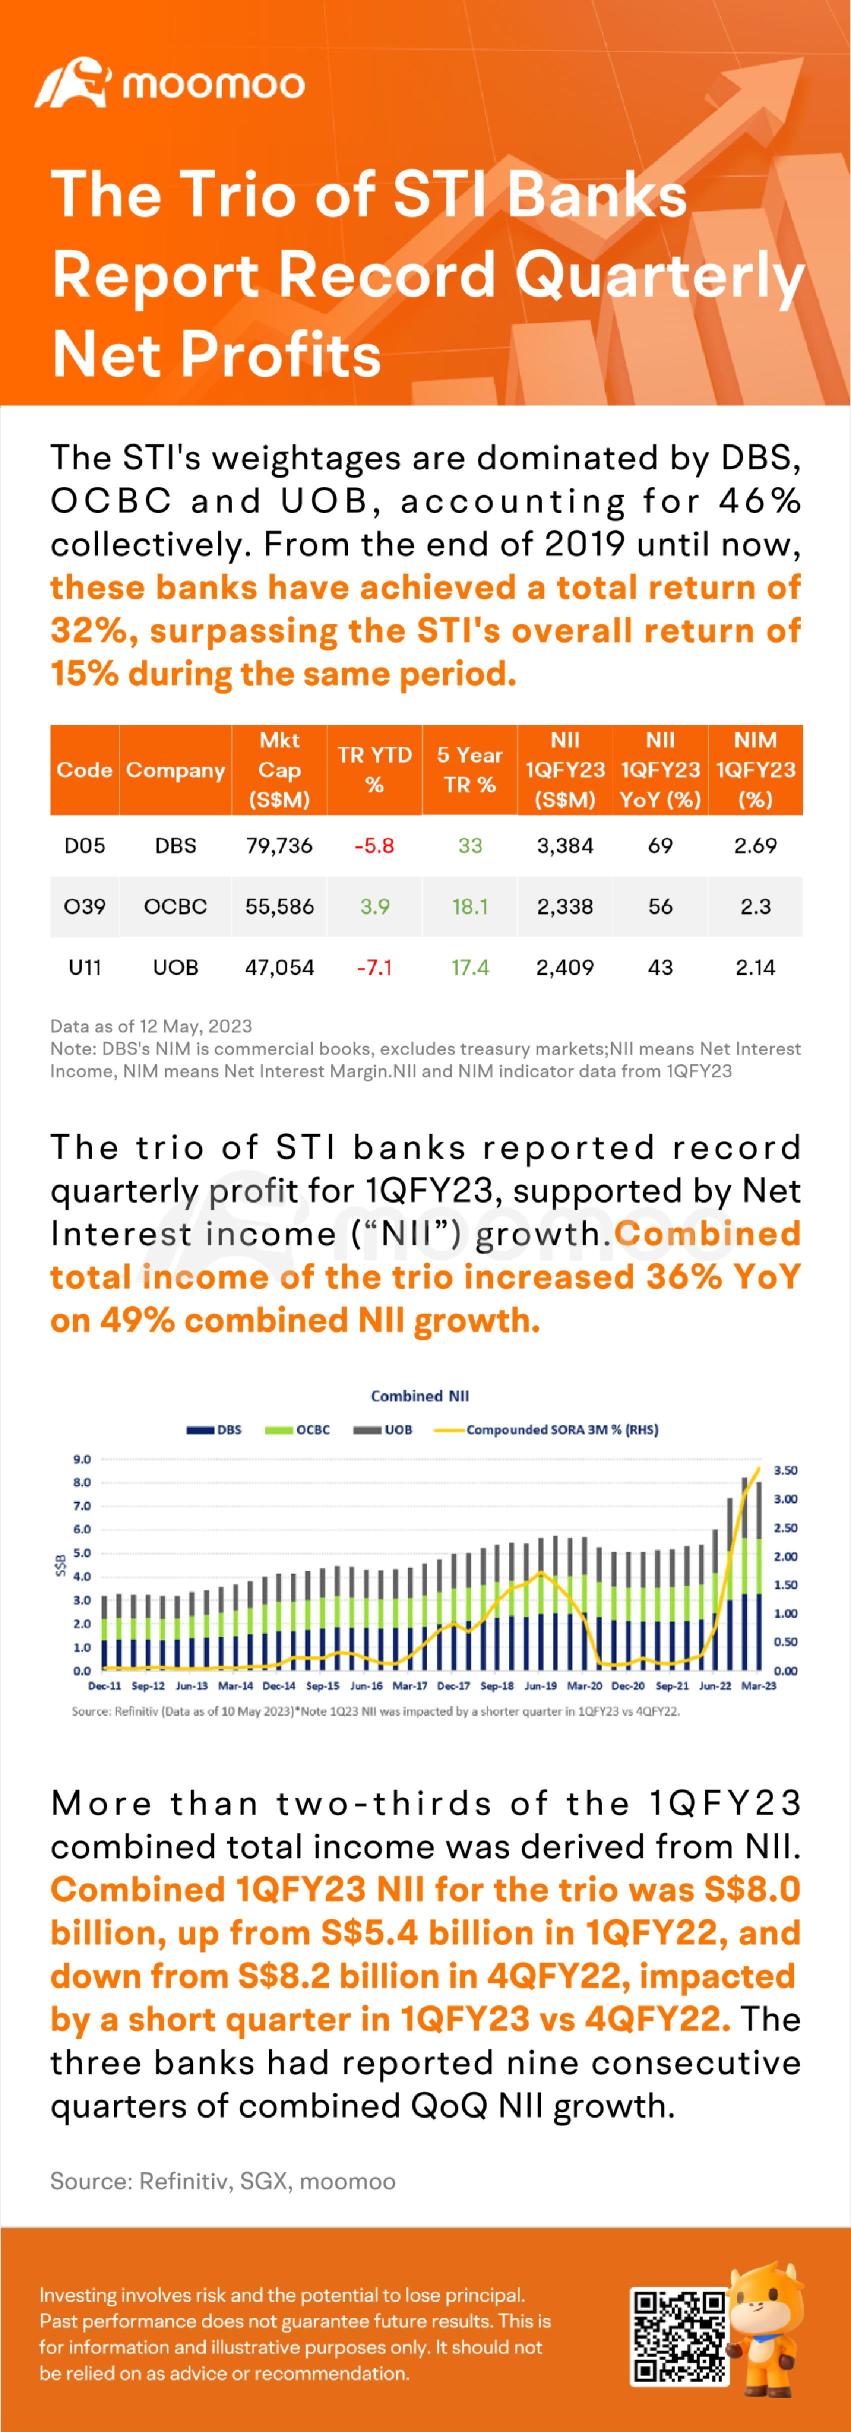 三家STI银行报告了创纪录的季度净利润